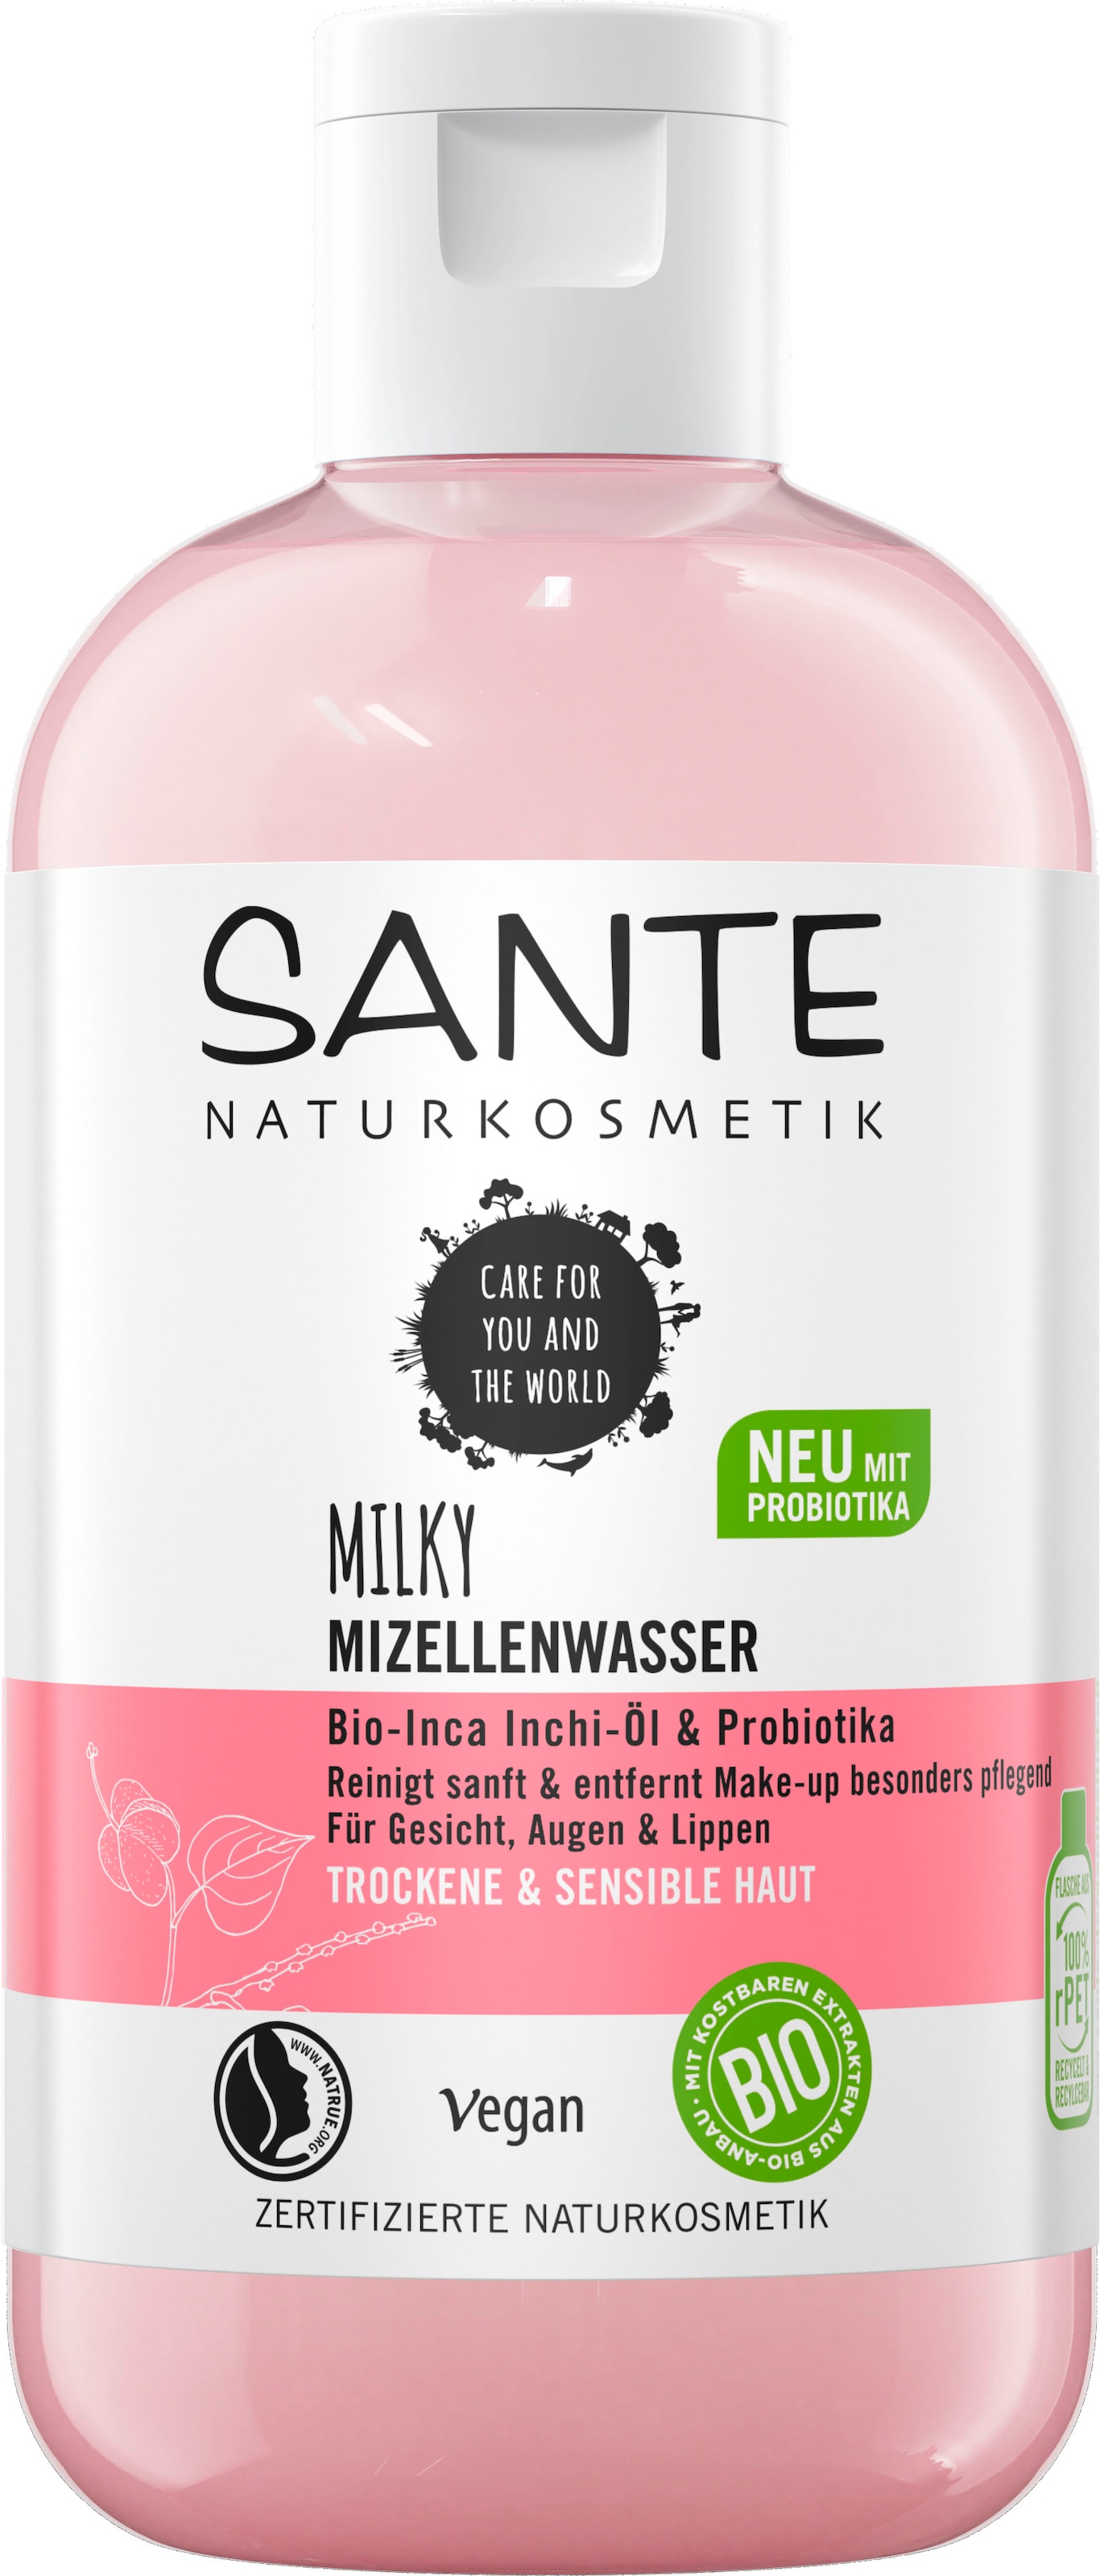 online SANTE bestellen »Milky Mizellenwasser« Gesichtswasser